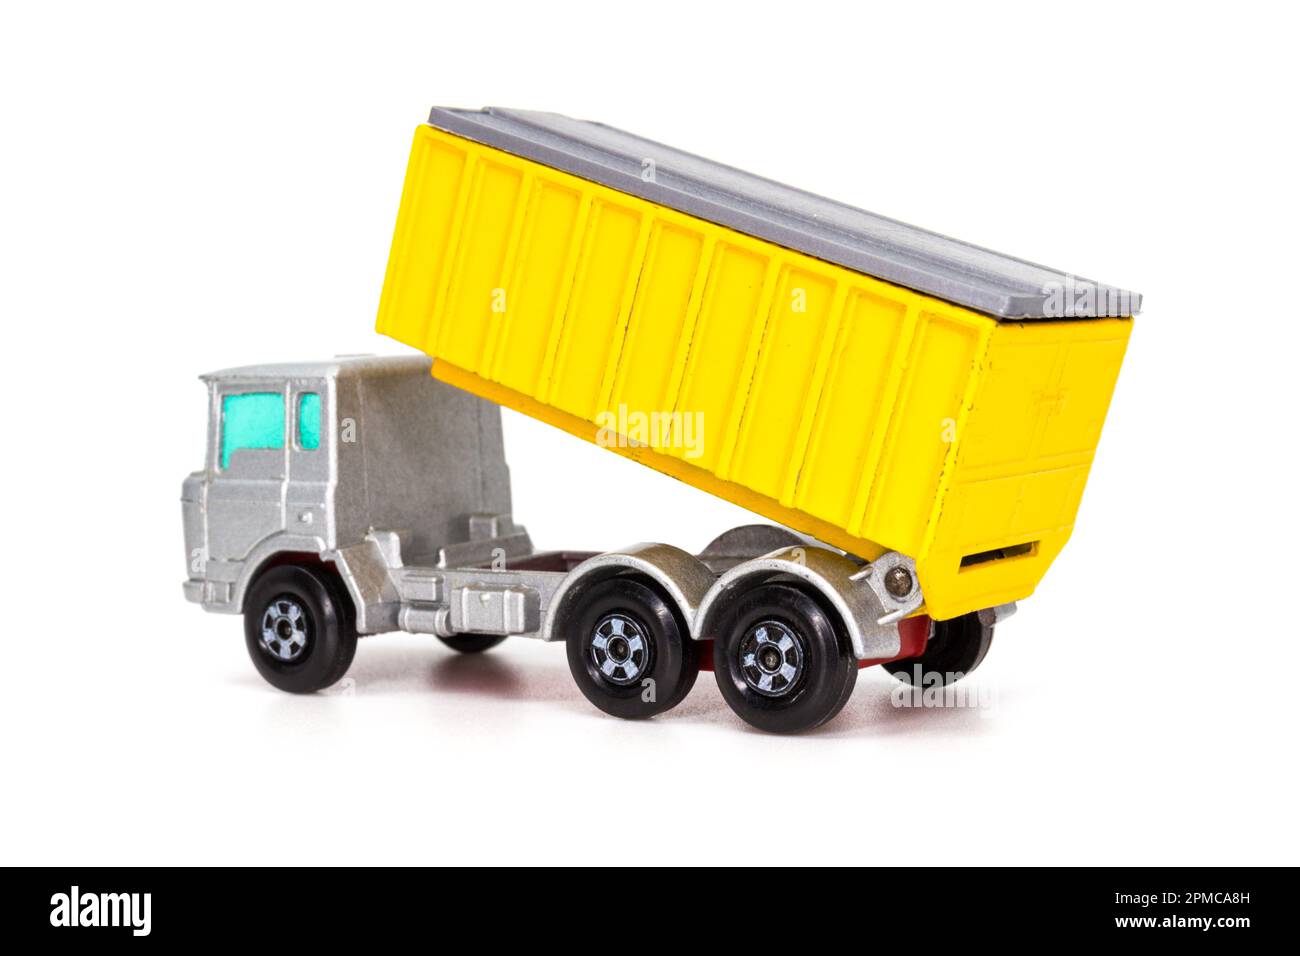 Lesney produits matchbox modèle jouet voiture 1-75 série no 47 camion-conteneur DAF avec caisse levée Banque D'Images